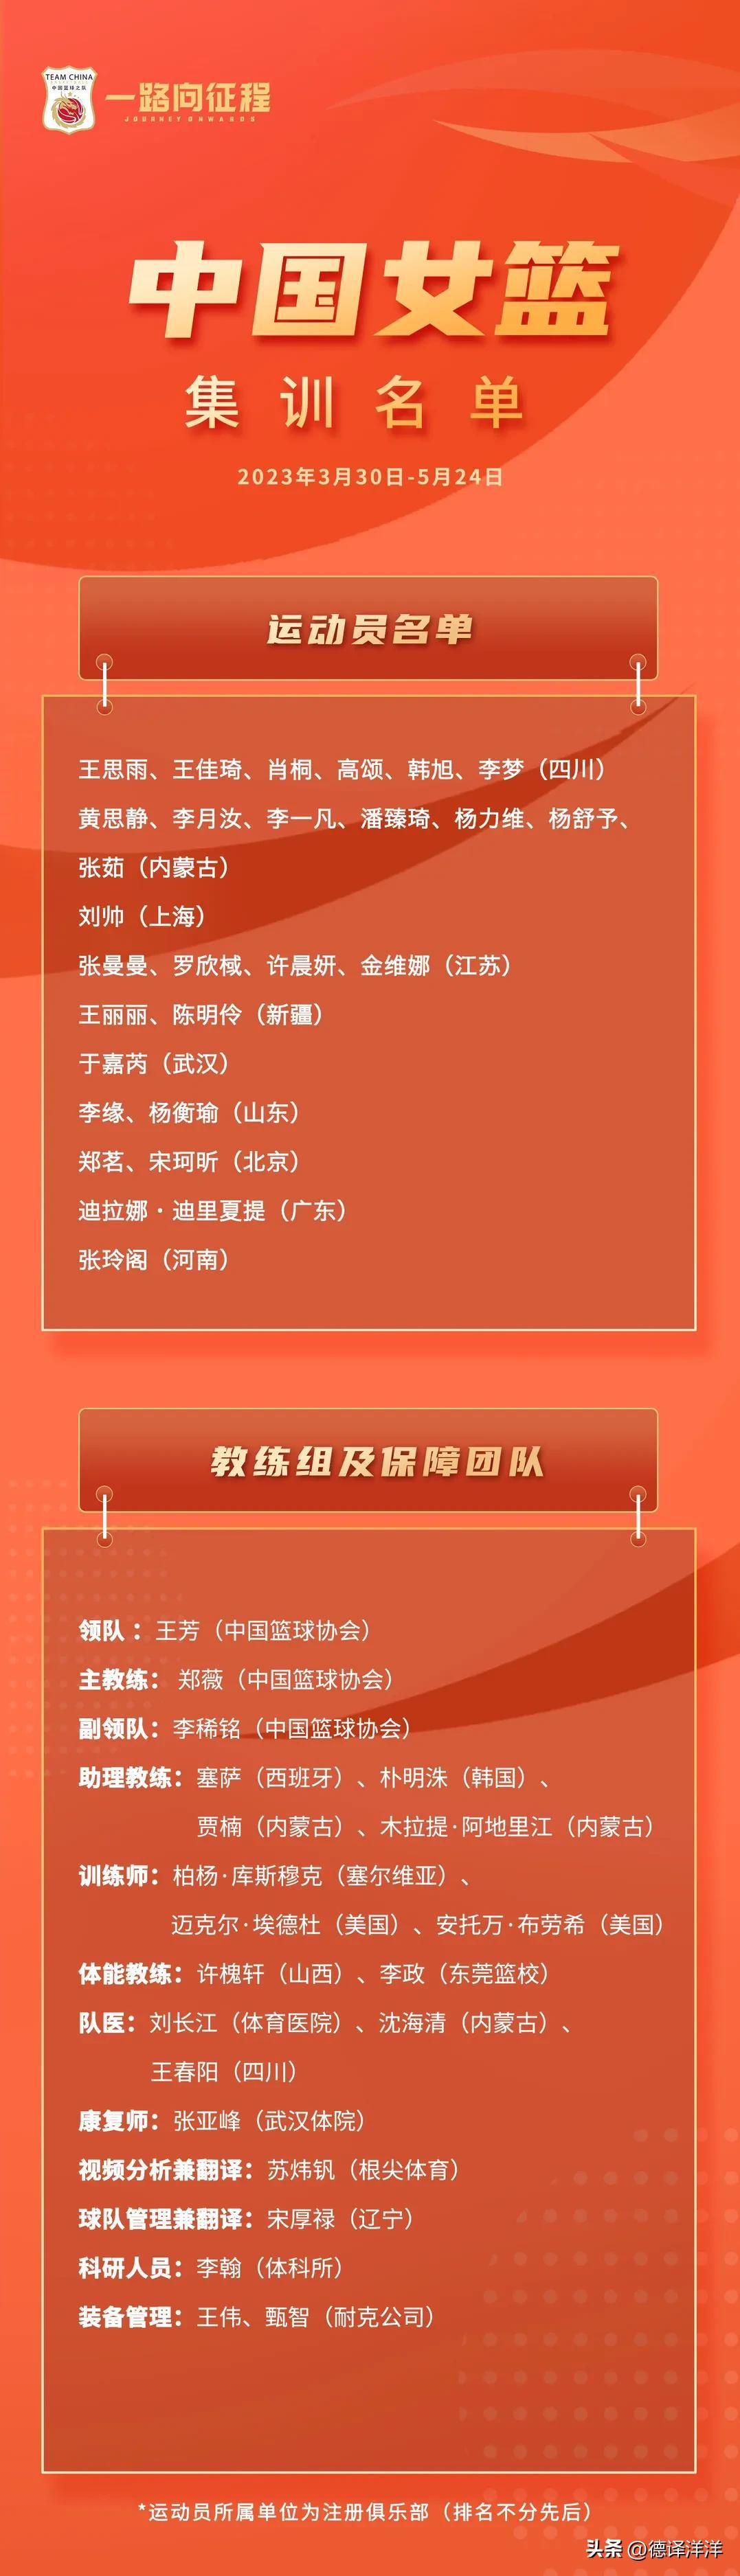 中国篮协公布最新一期中国女篮集训名单。
为备战2023年女篮亚洲杯和亚运会等赛事